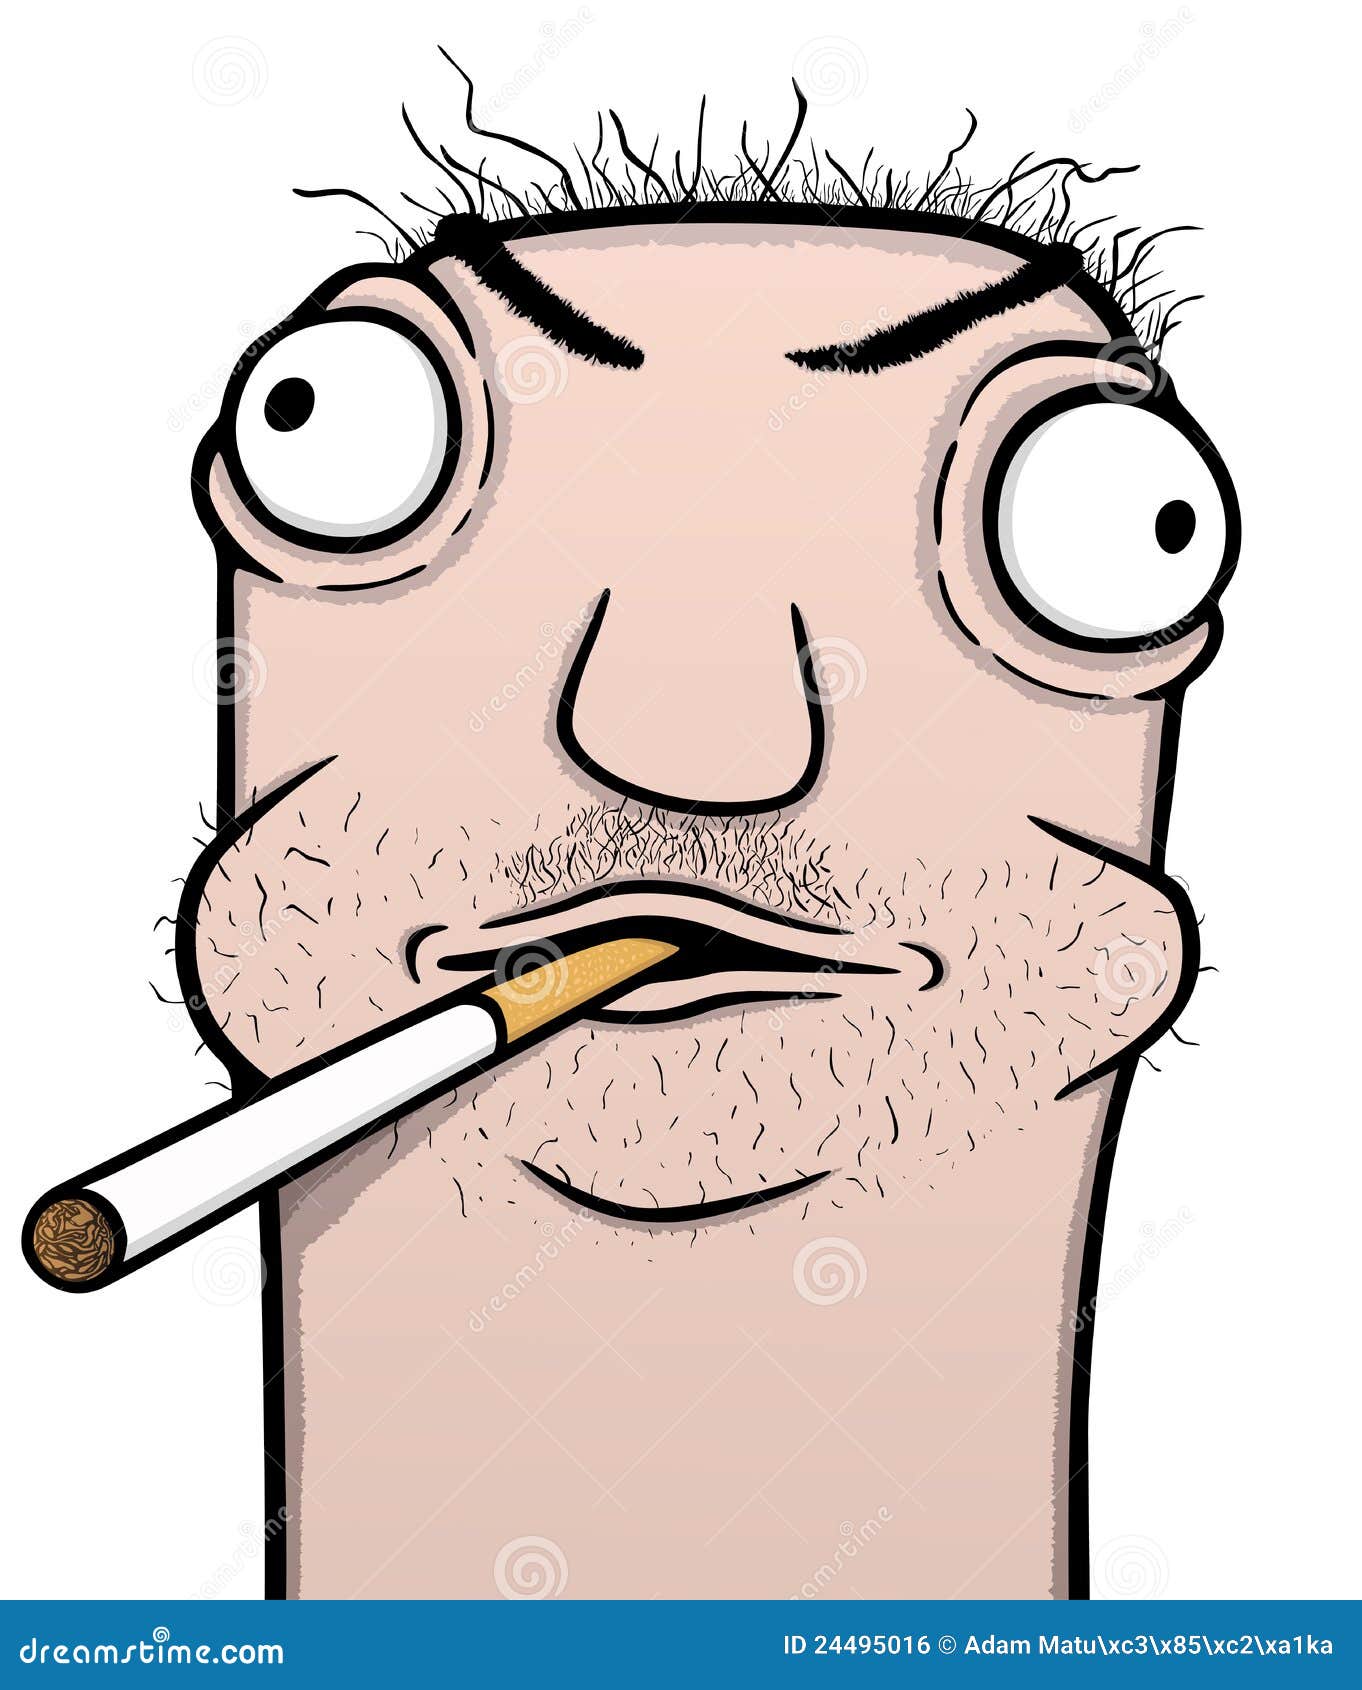 Smoker Cartoon Royalty Free Stock Image - Image: 24495016